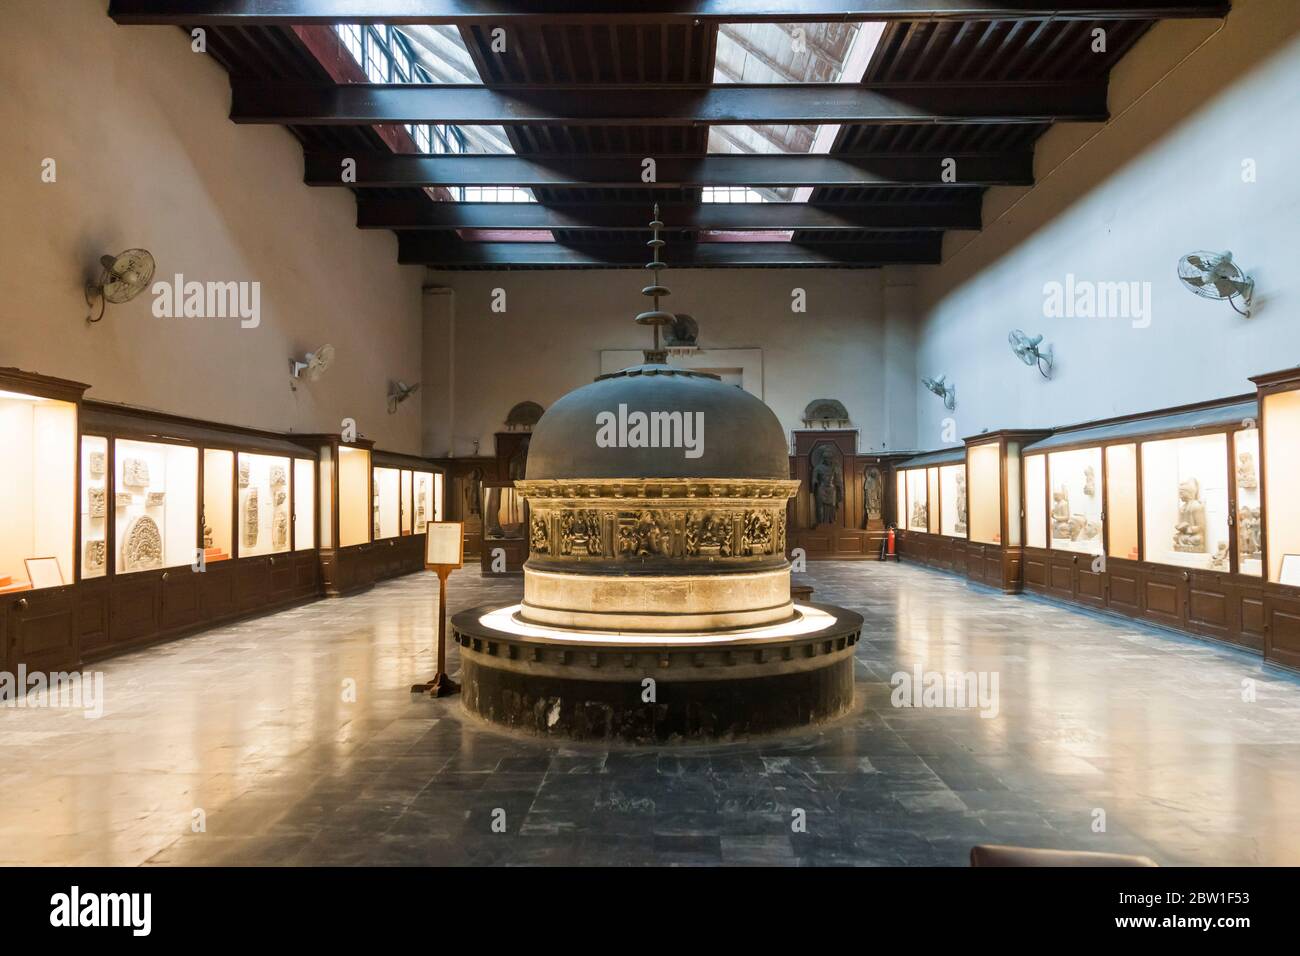 Salle d'exposition du musée Lahore, époque coloniale britannique, Lahore, province du Punjab, Pakistan, Asie du Sud, Asie Banque D'Images